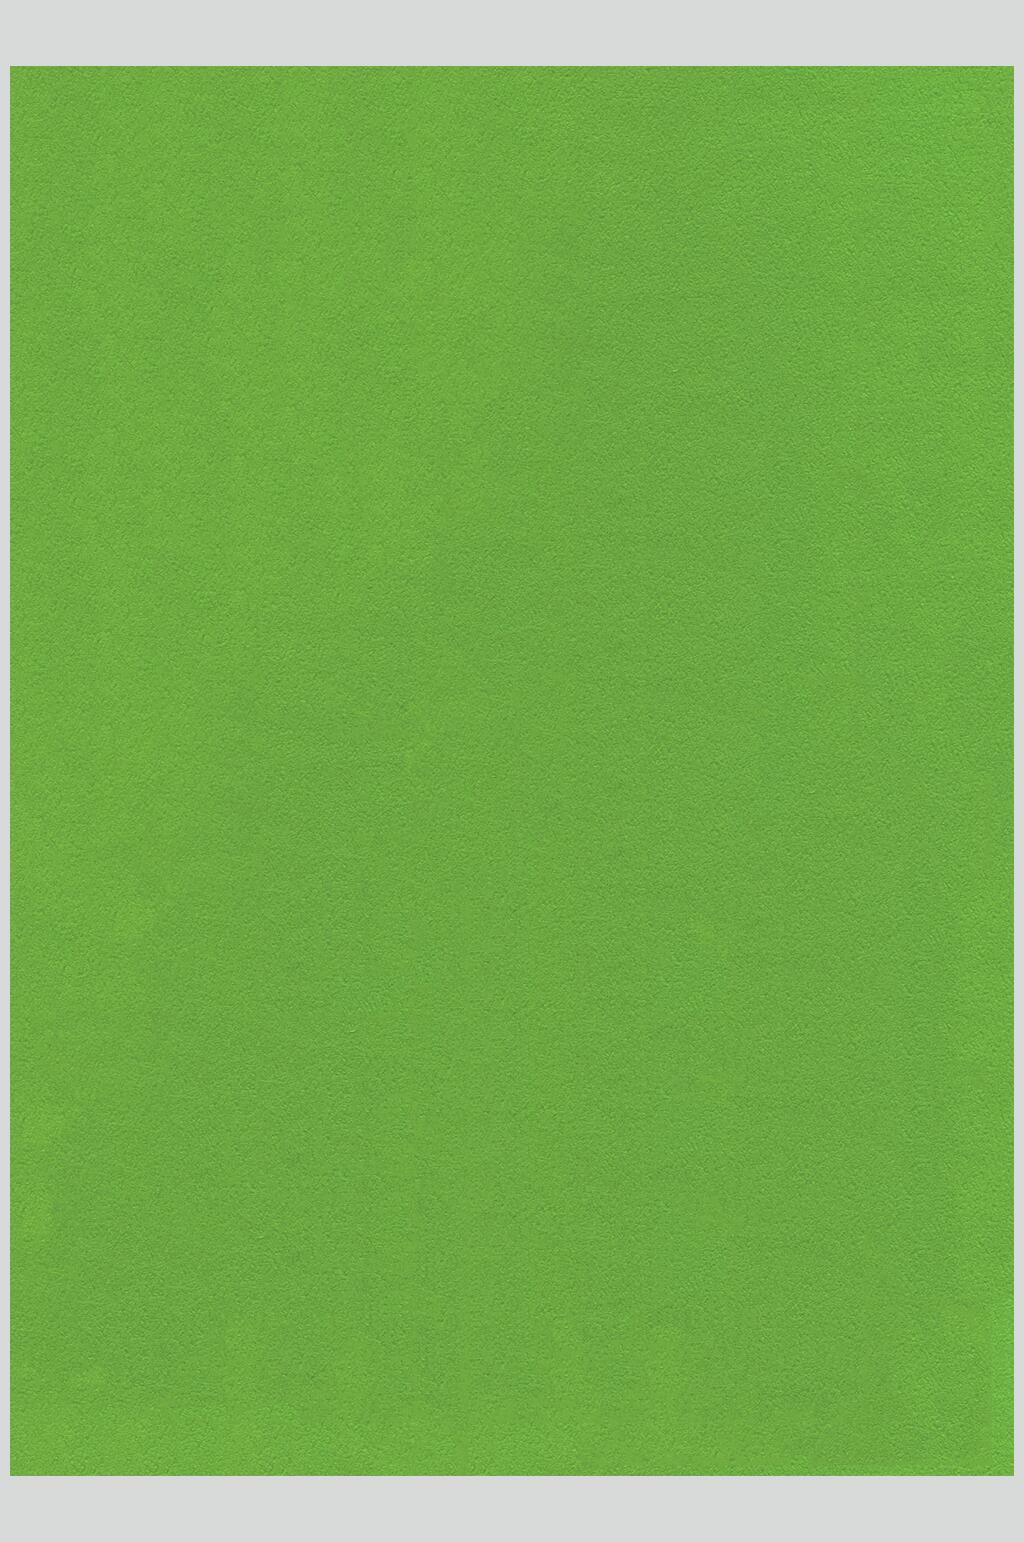 纯绿色全屏 纯色图片